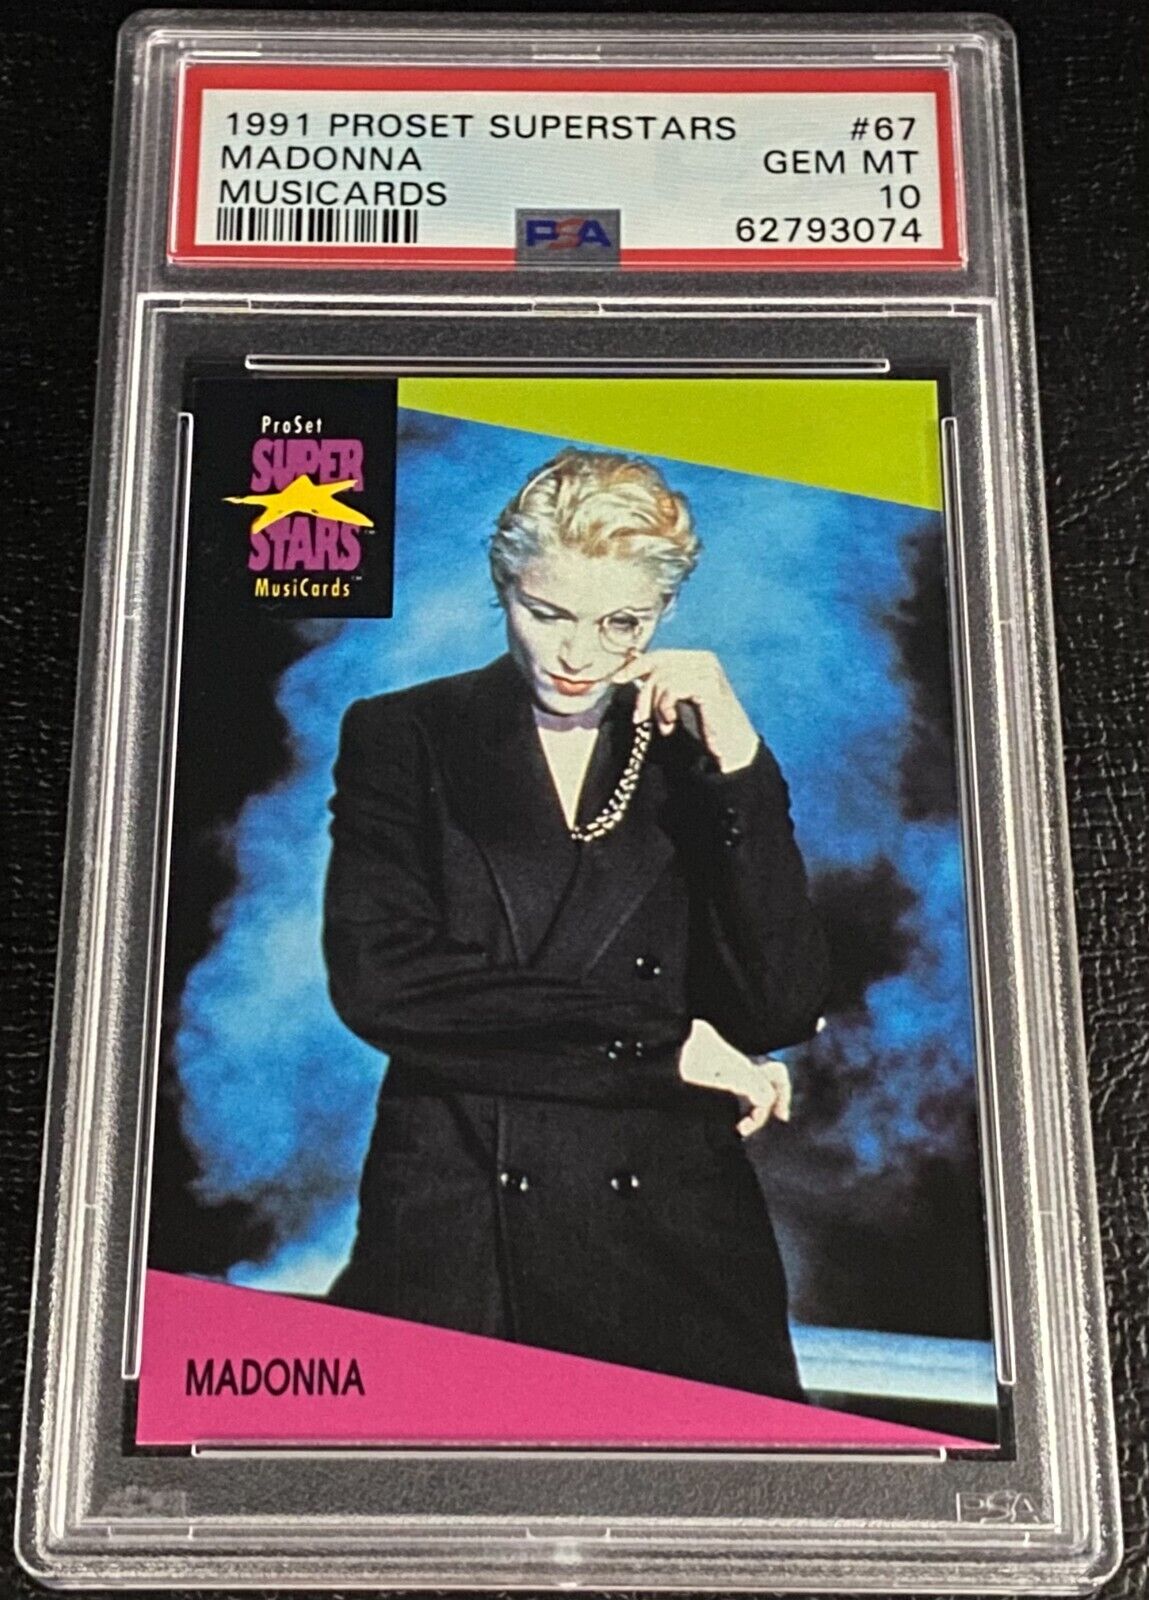 PSA 10 Madonna 1991 Proset Superstars Musicards Card #67 Pop Music Gem Mint 90s